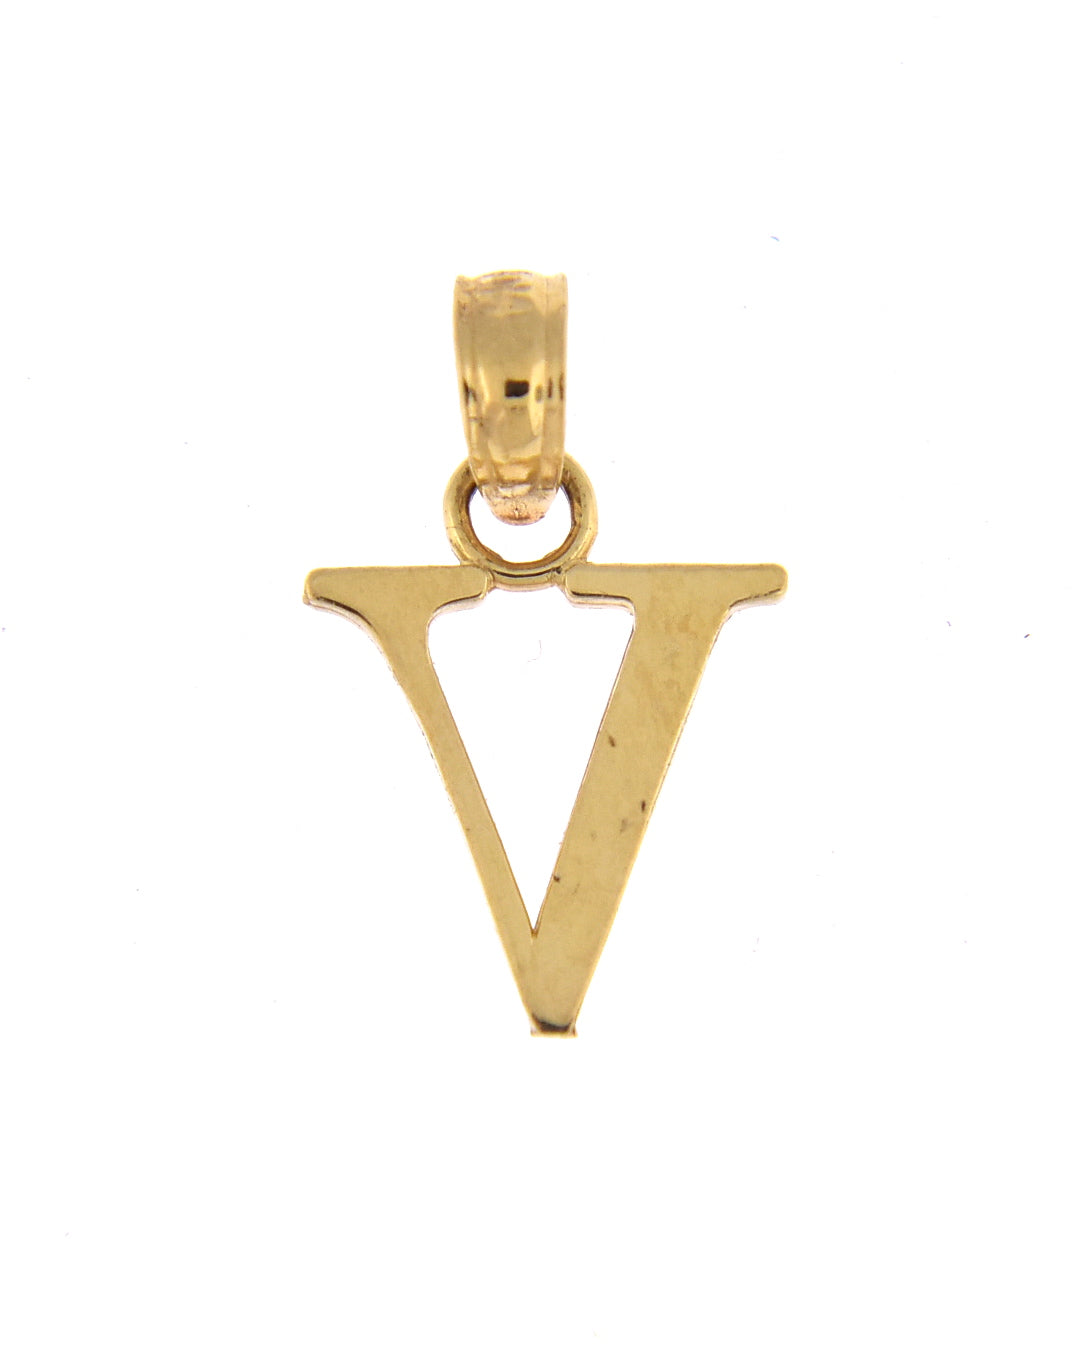 14K Yellow Gold Uppercase Initial Letter V Block Alphabet Pendant Charm